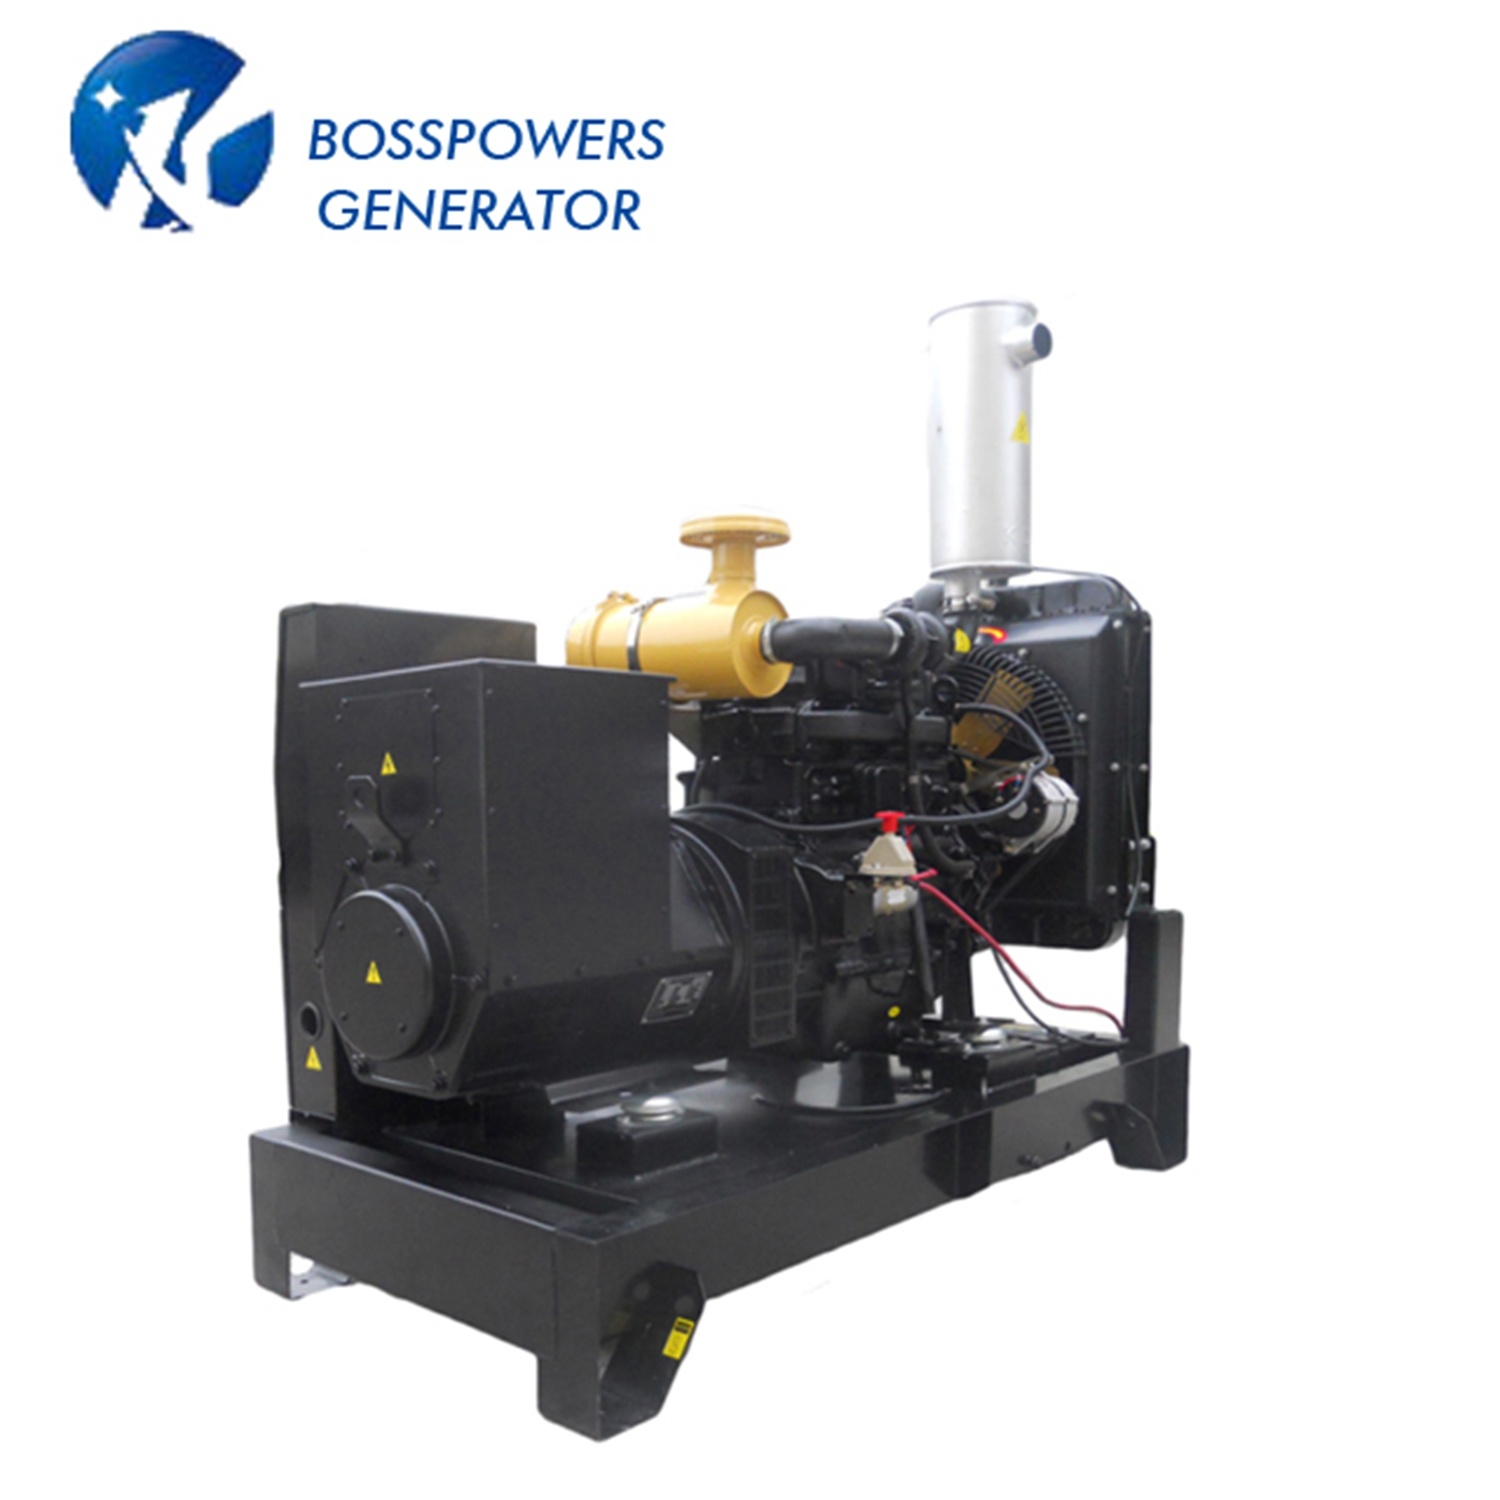 Prime Power 64kw 80kVA Open Type Power Genset Diesel Generator